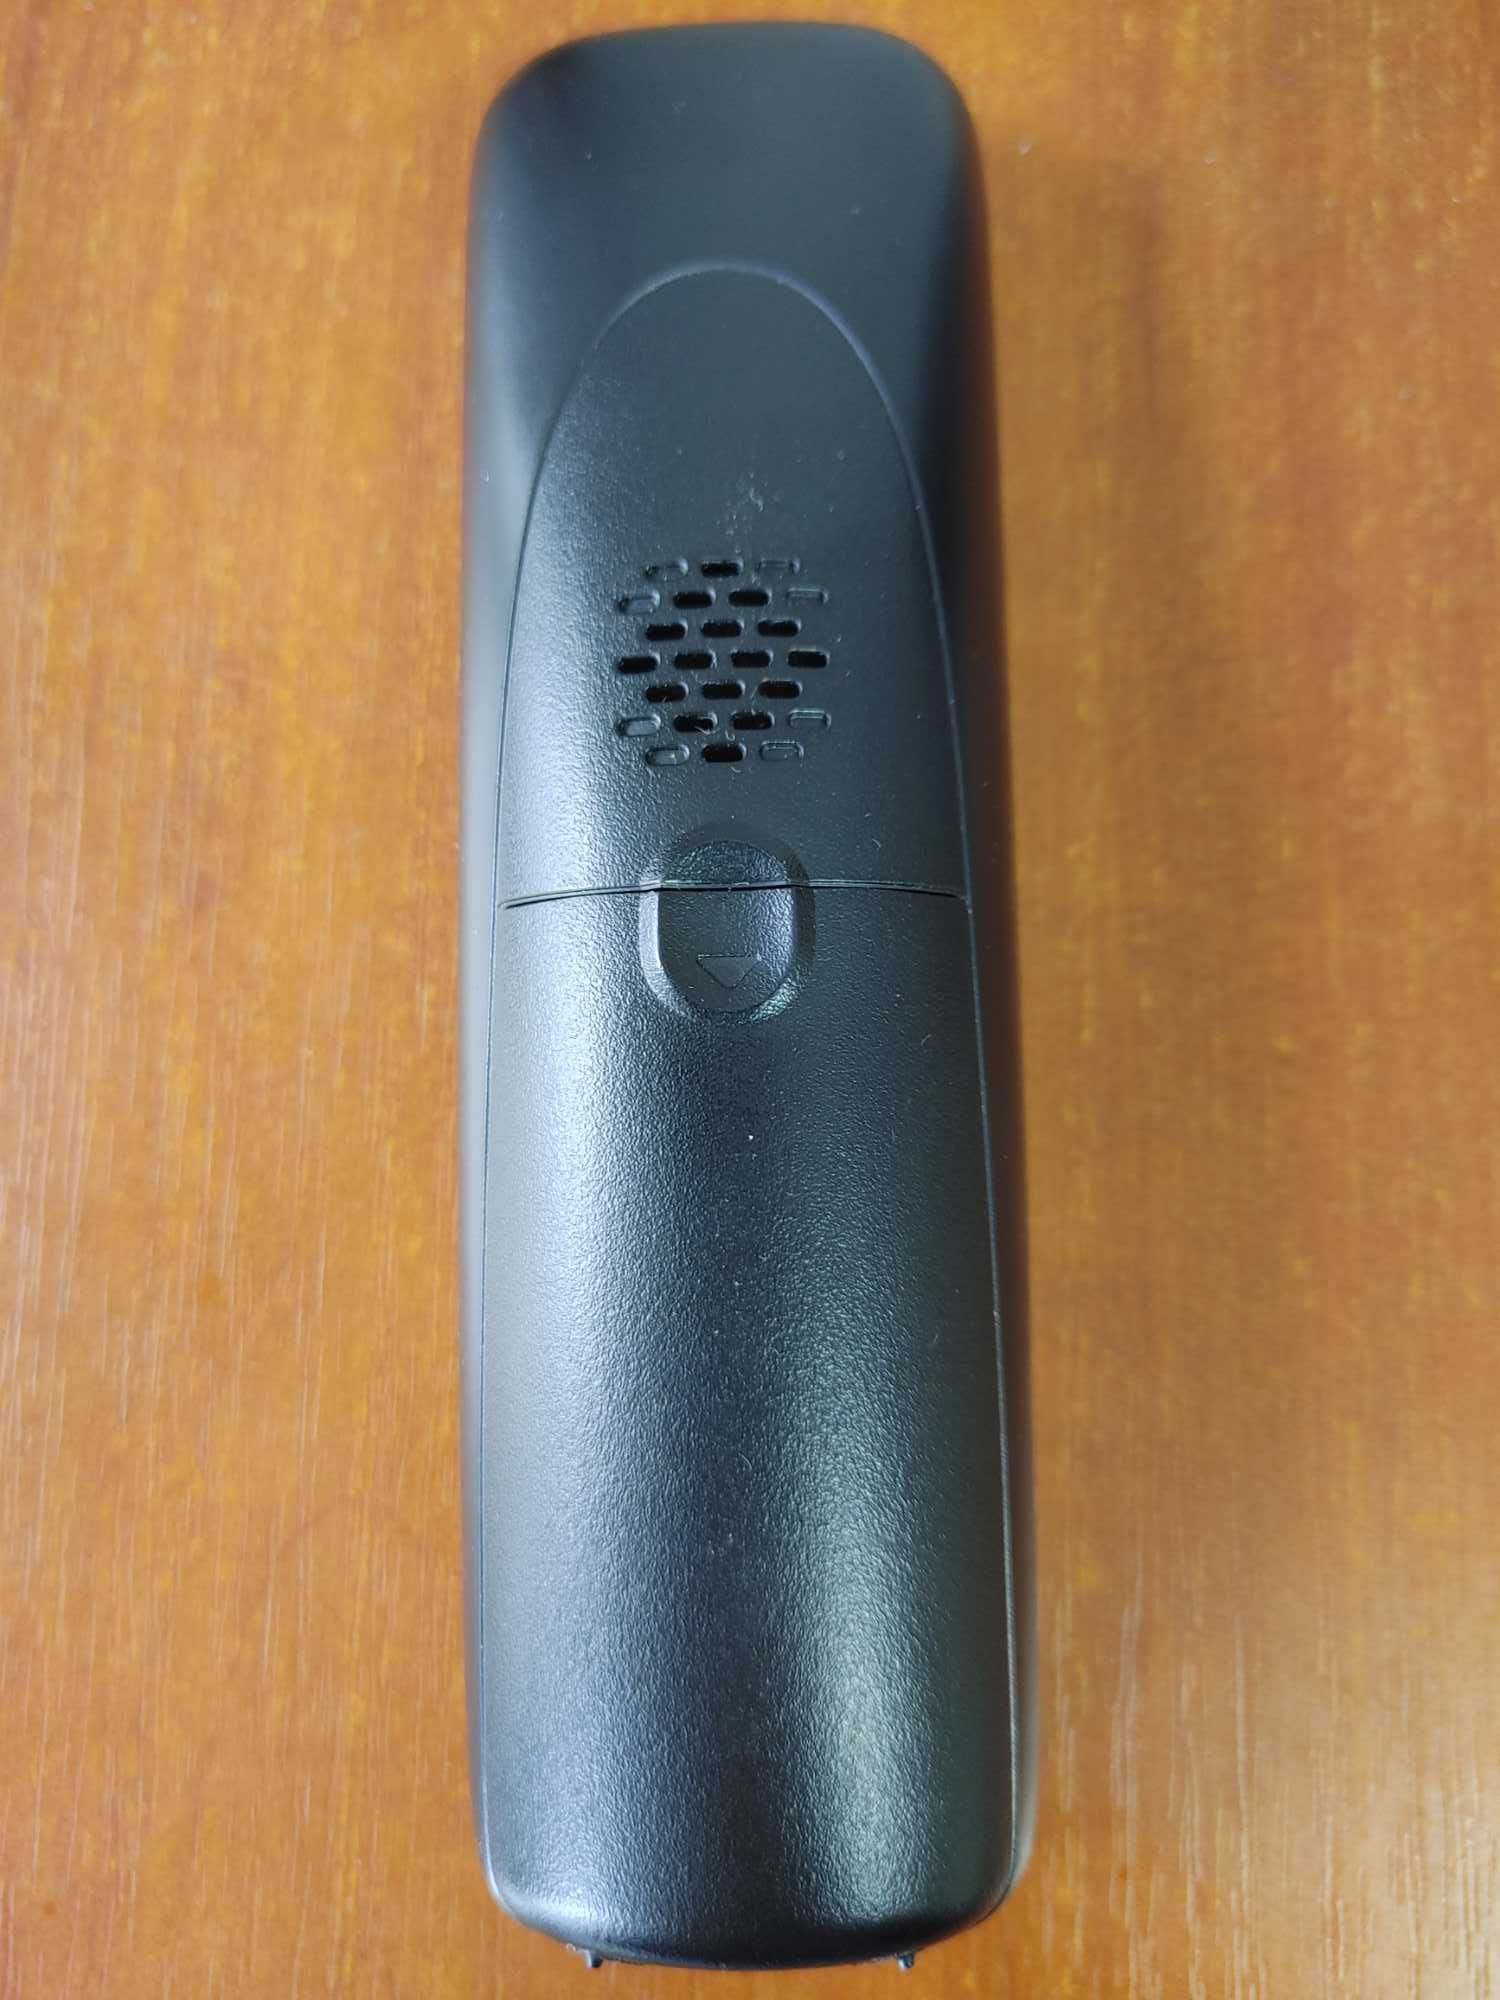 Радиотелефон Panasonic KX-TG2511UA АОН полифония подсветка